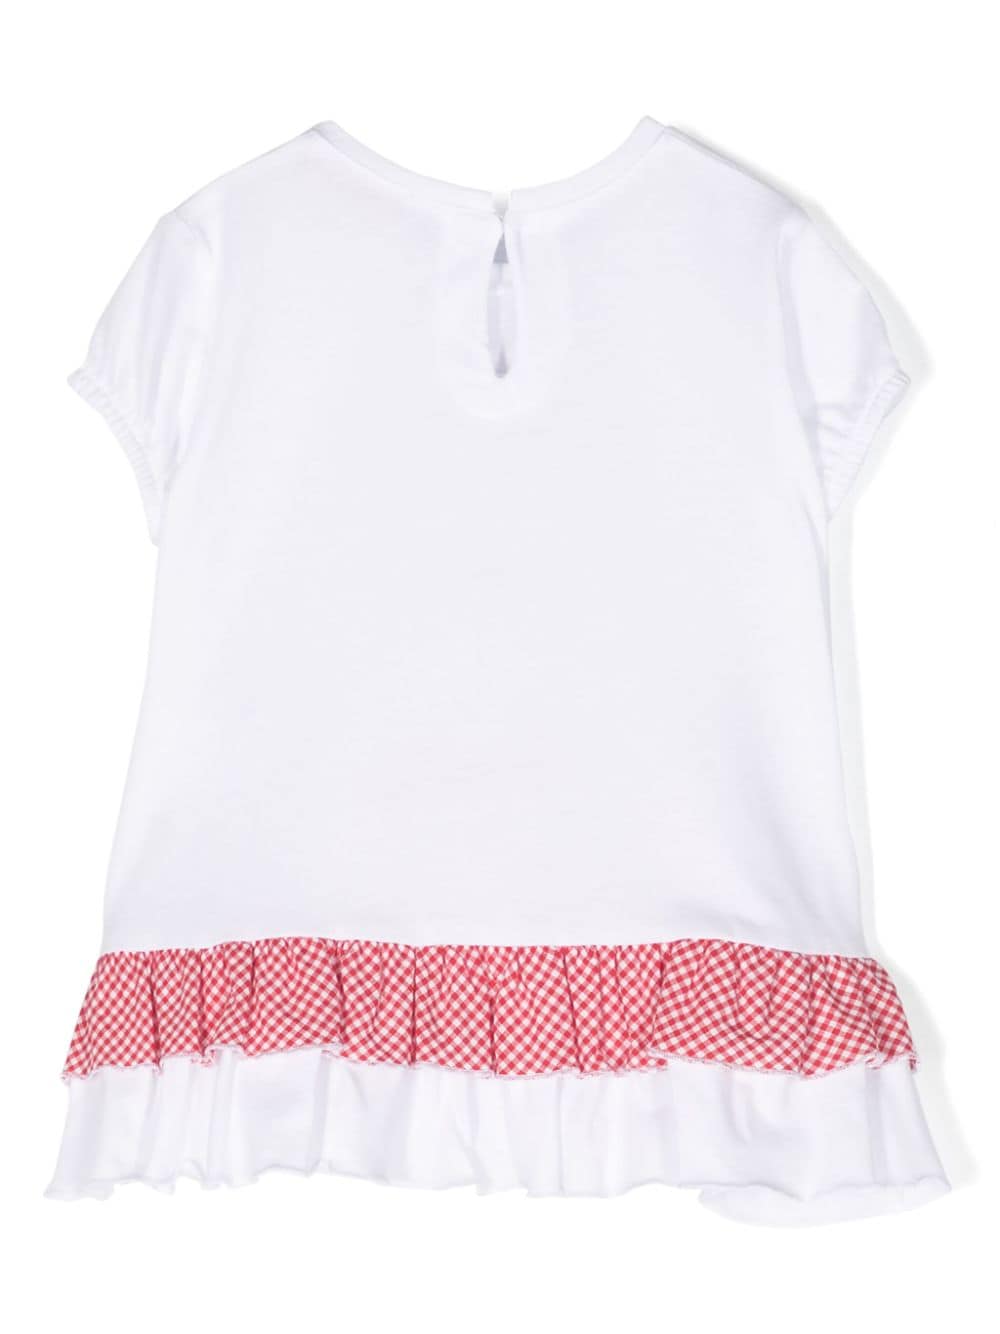 T-shirt bianca e rossa per neonata con stampa